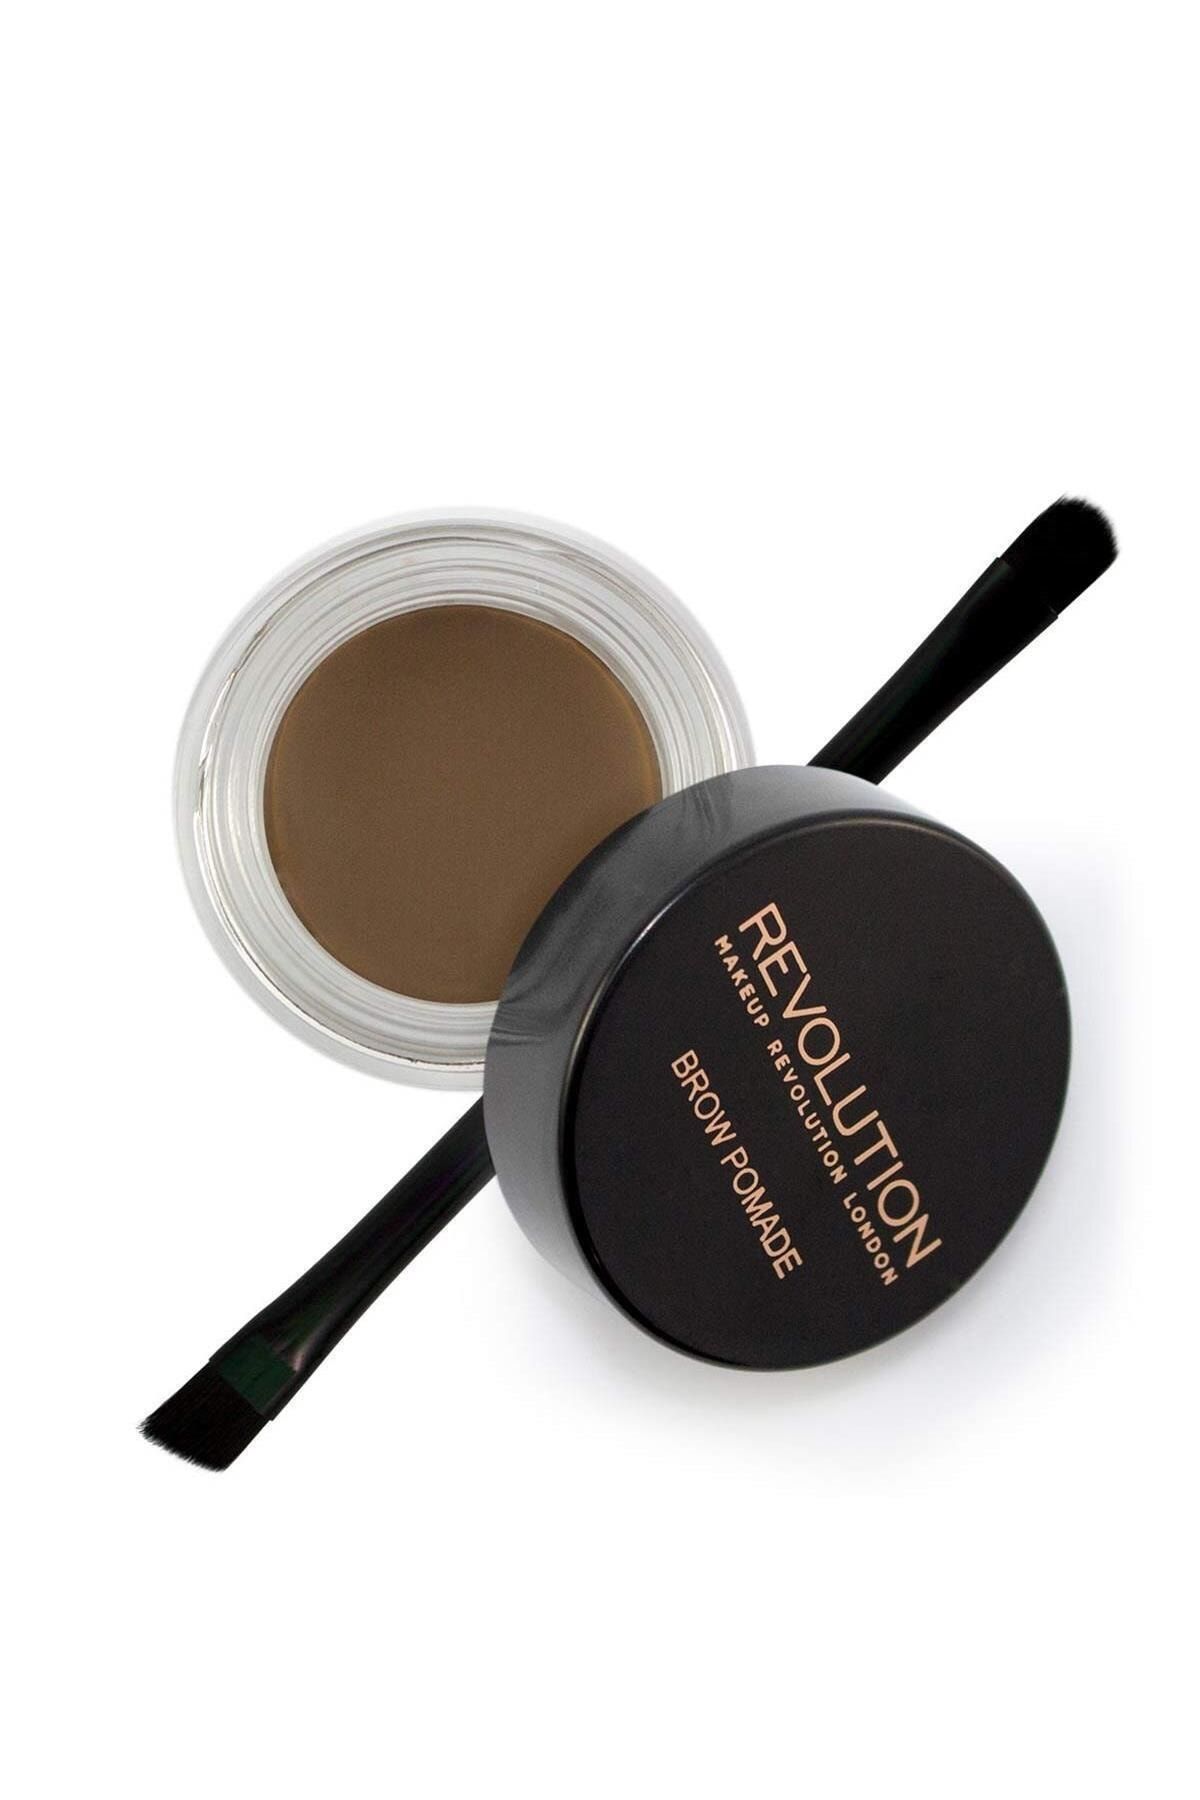 Revolution Makeup Revolutıon Kaş Kiti - Brow Pomade Medium Brown 6565